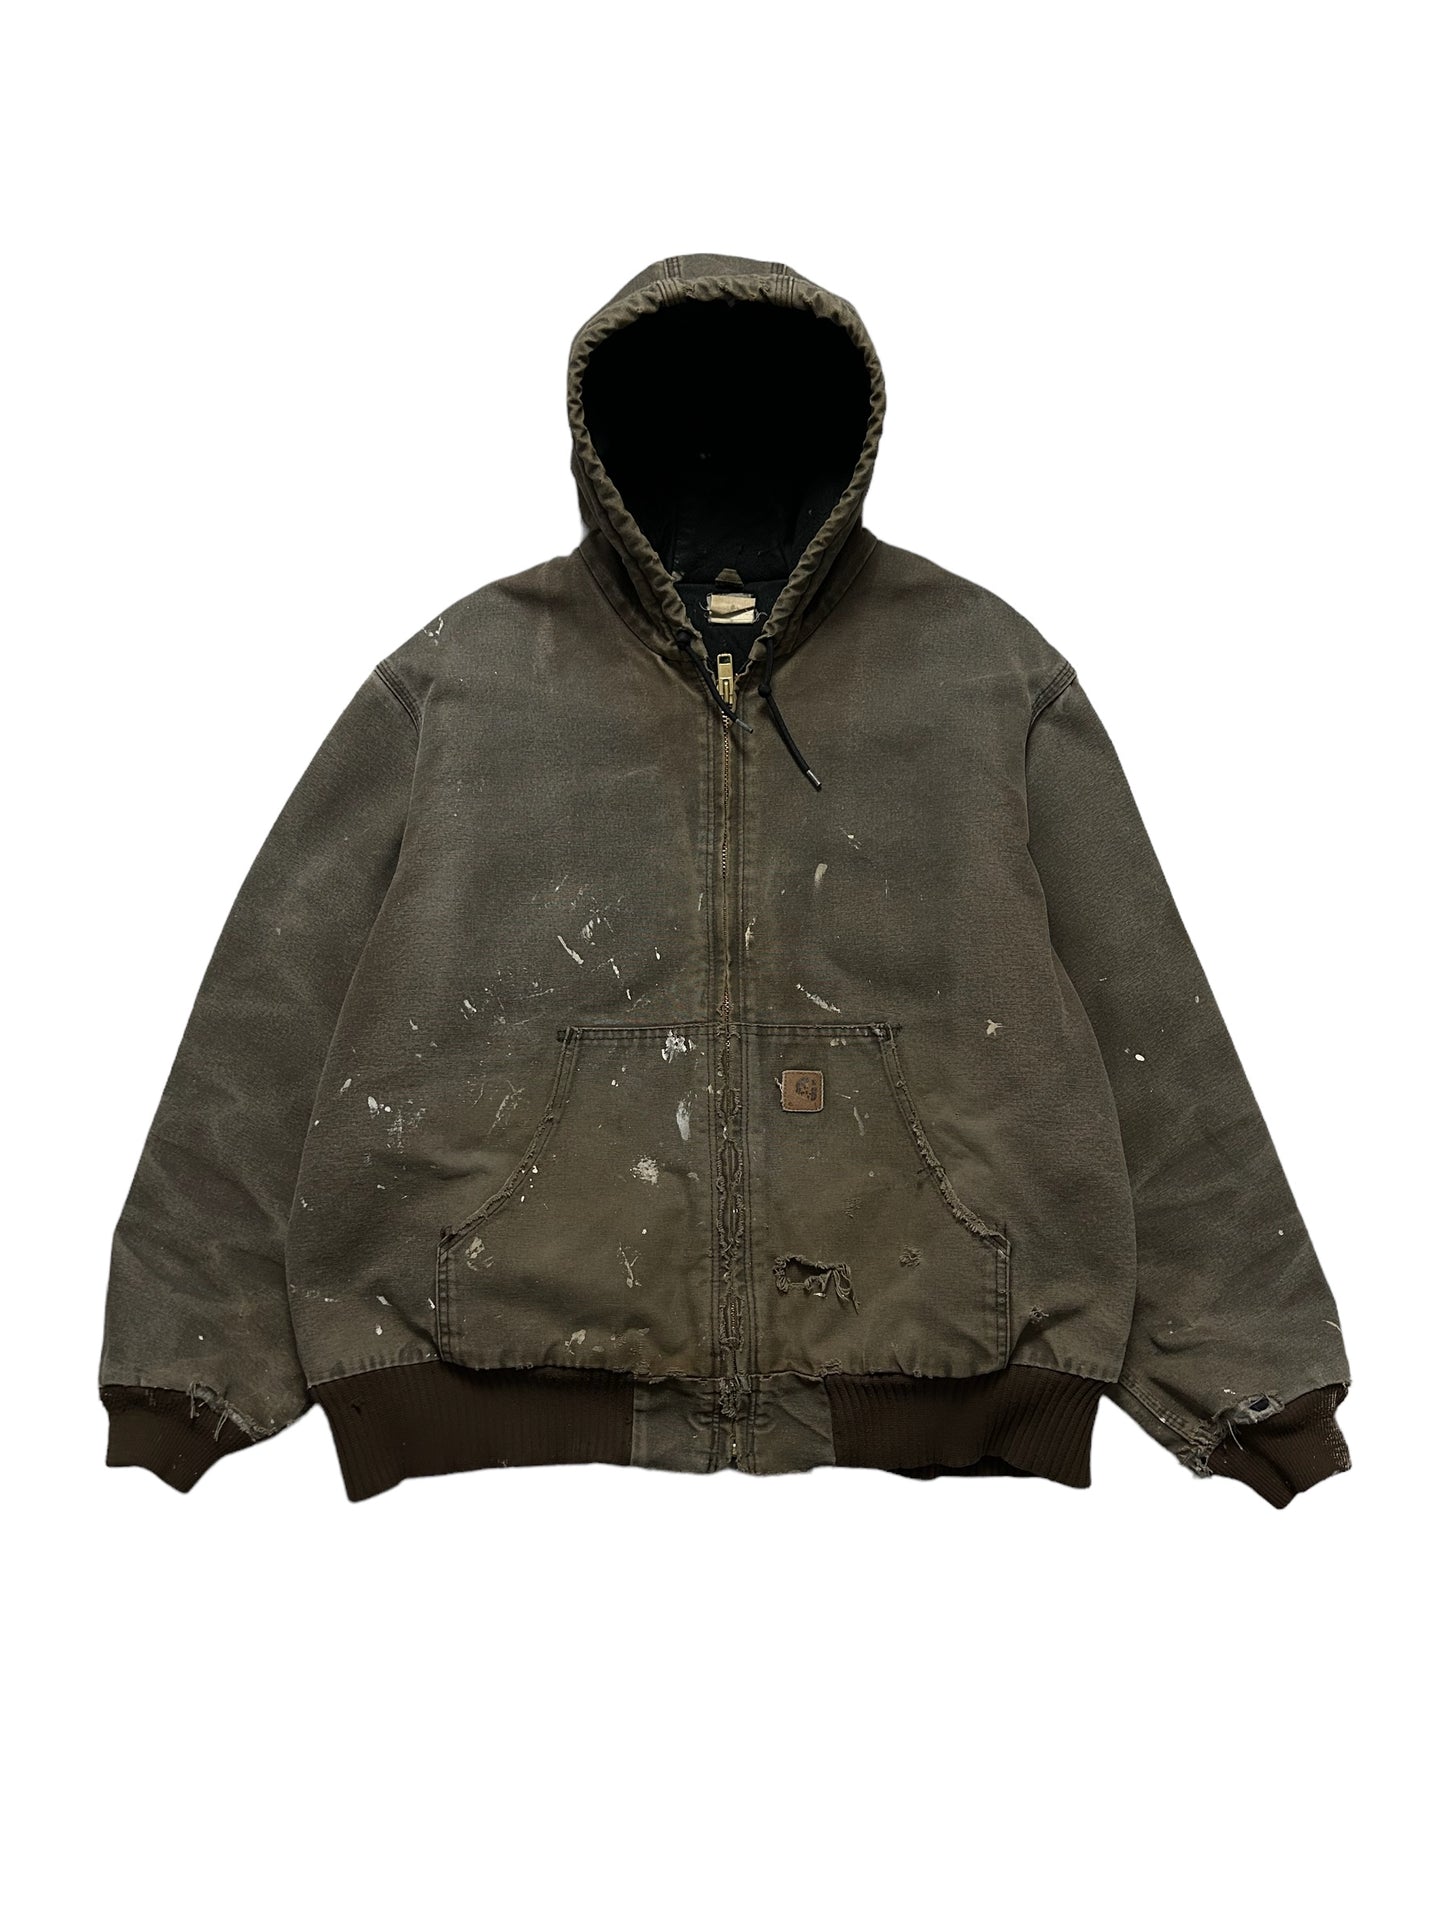 Vintage Carhartt hooded jacket XL